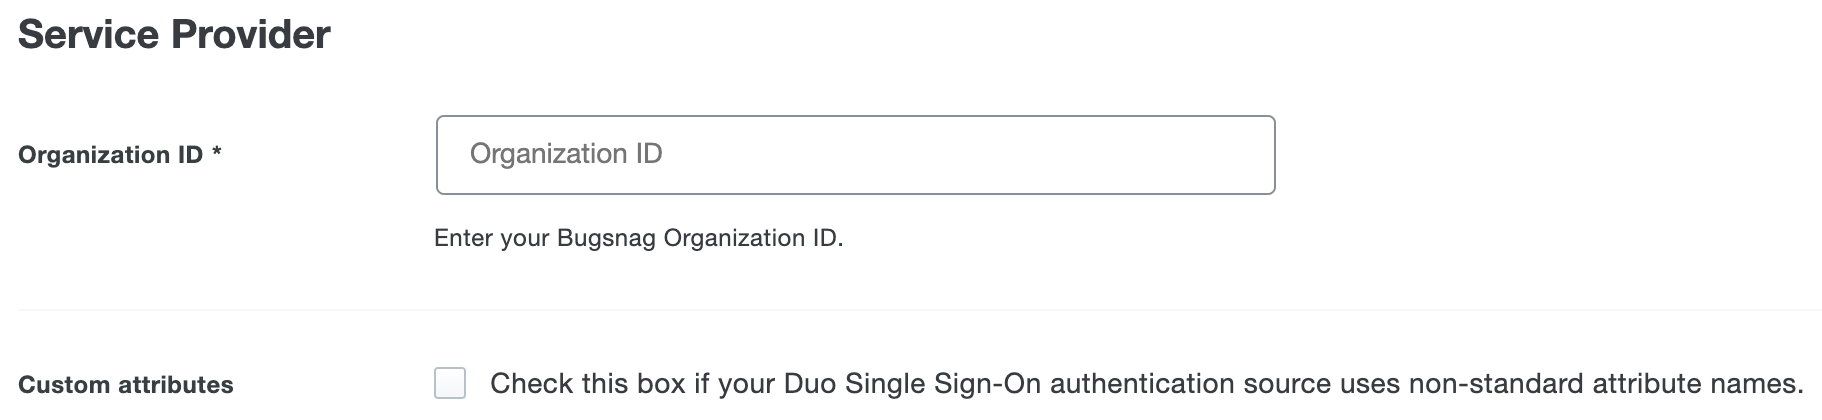 Duo BugSnag Custom Attributes